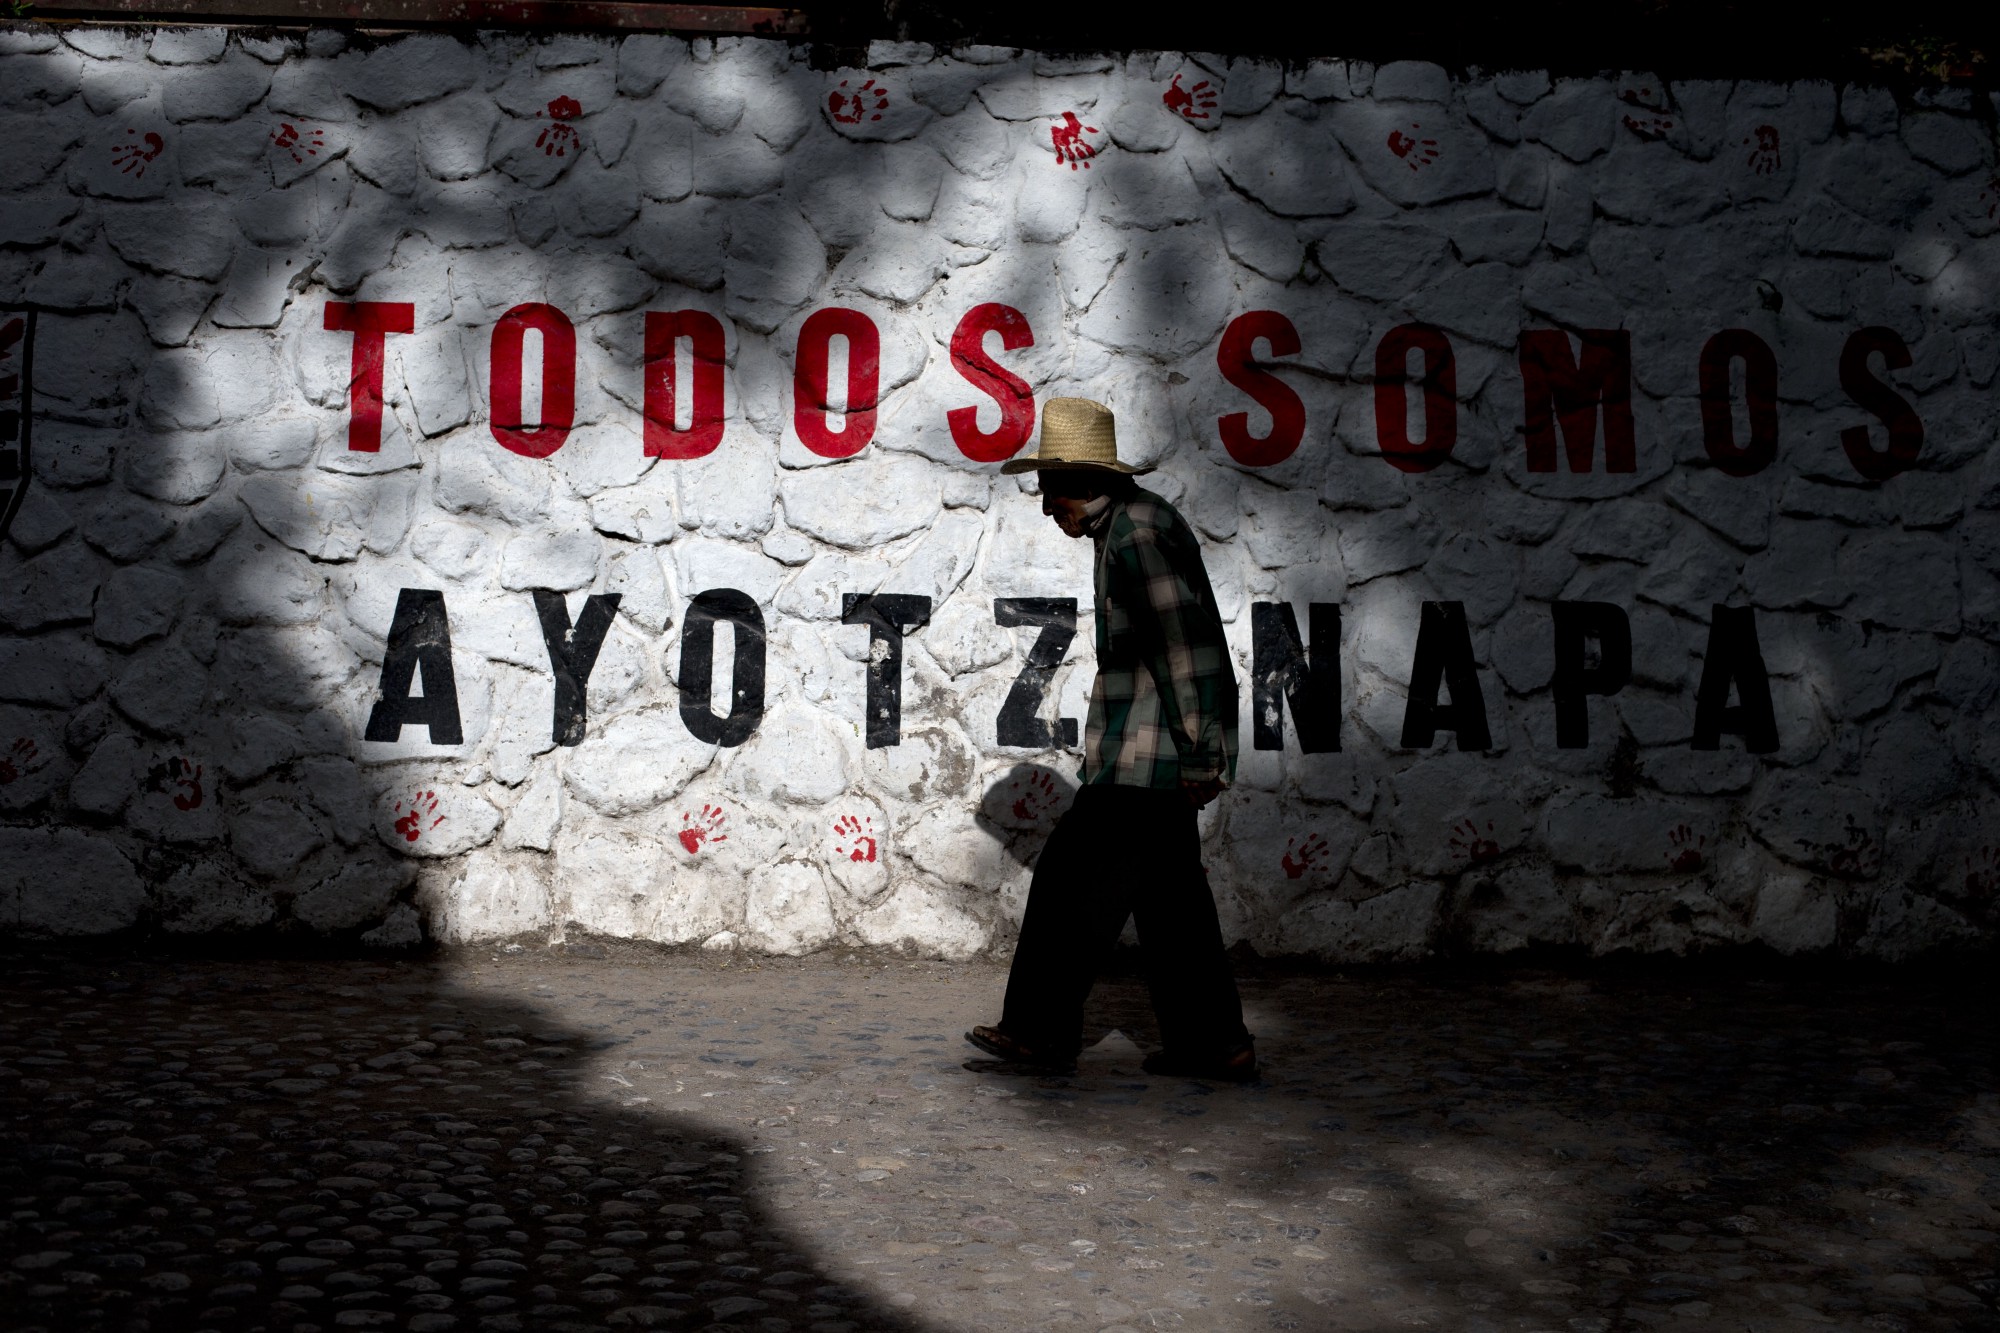 Un año después de la desaparición, un hombre pasa junto a un muro donde se lee “Todos somos Ayotzinapa”.